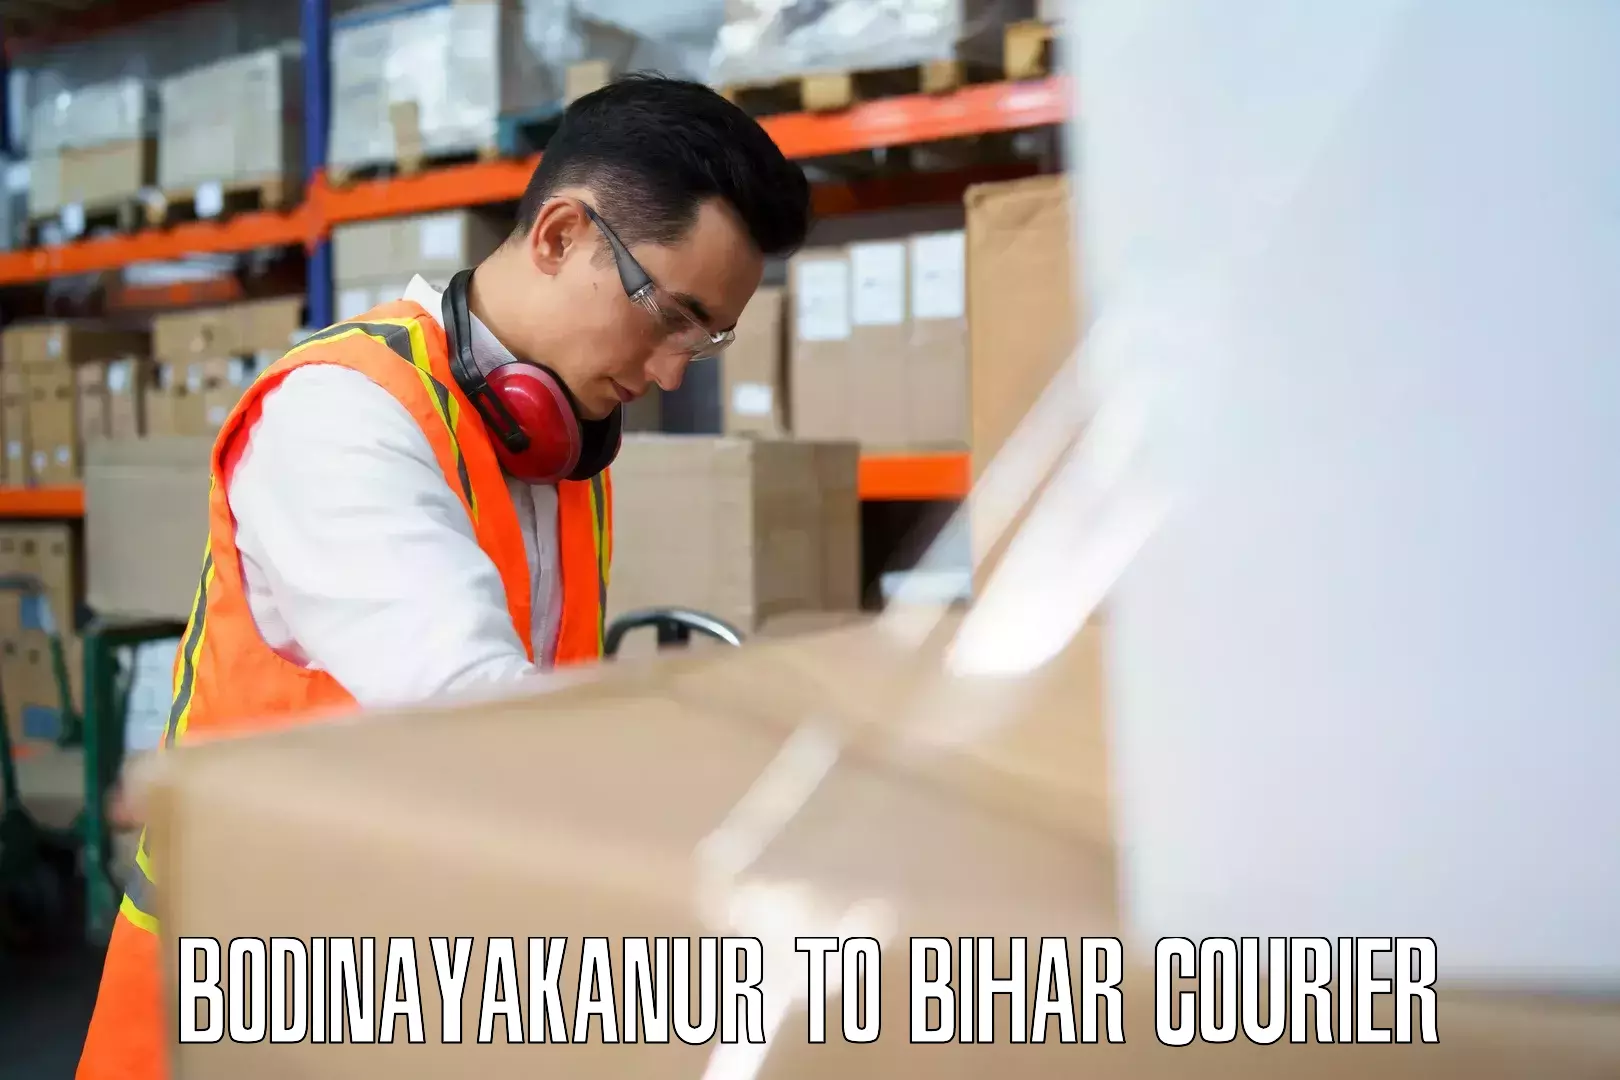 Global baggage shipping Bodinayakanur to Birpur